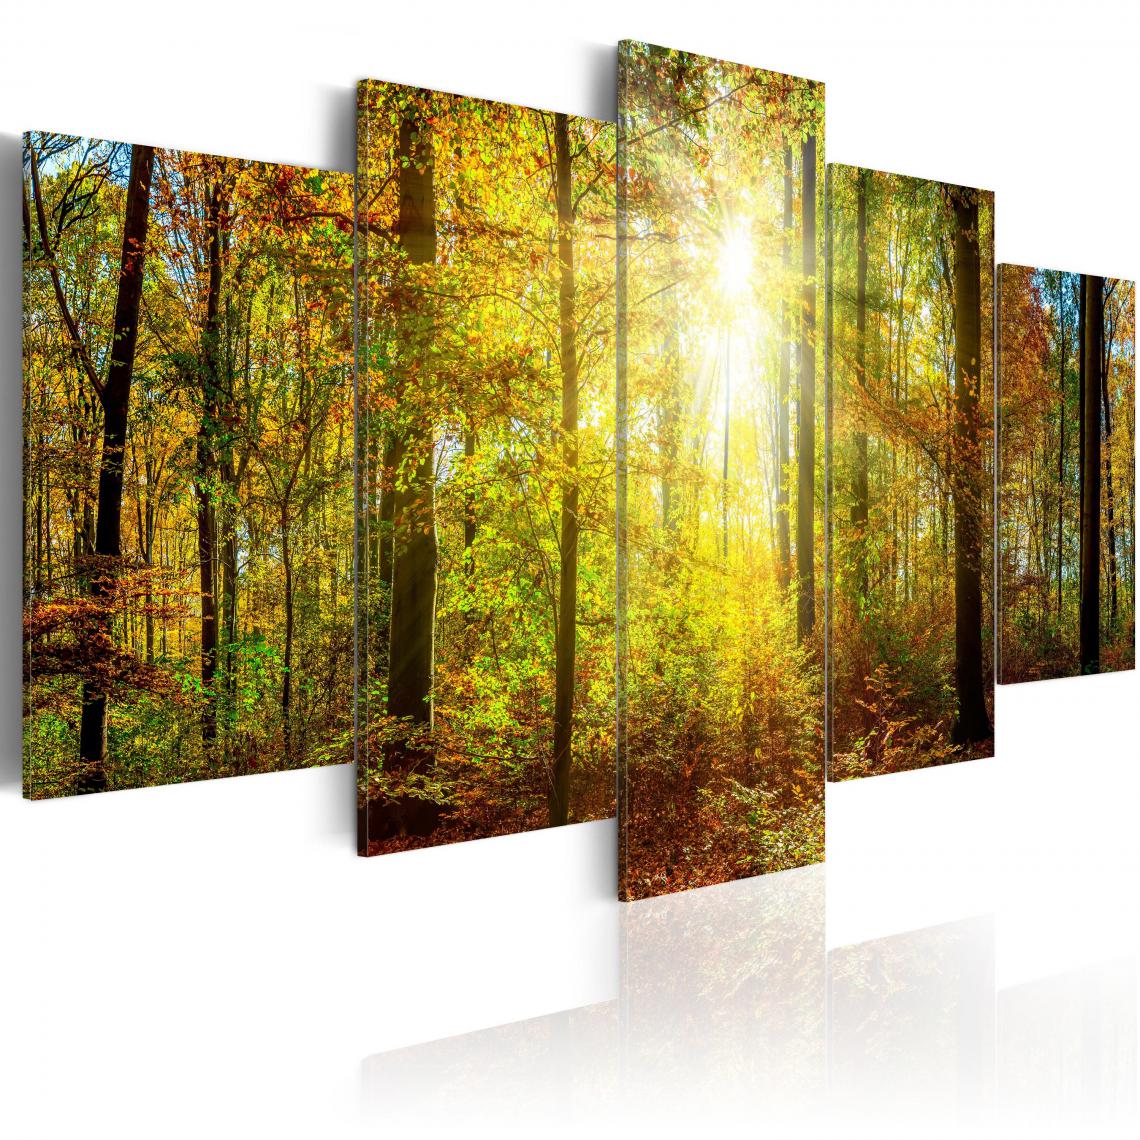 Decoshop26 - Tableau sur toile en 5 panneaux décoration murale image imprimée cadre en bois à suspendre Forêt mystique 200x100 cm 11_0006243 - Tableaux, peintures